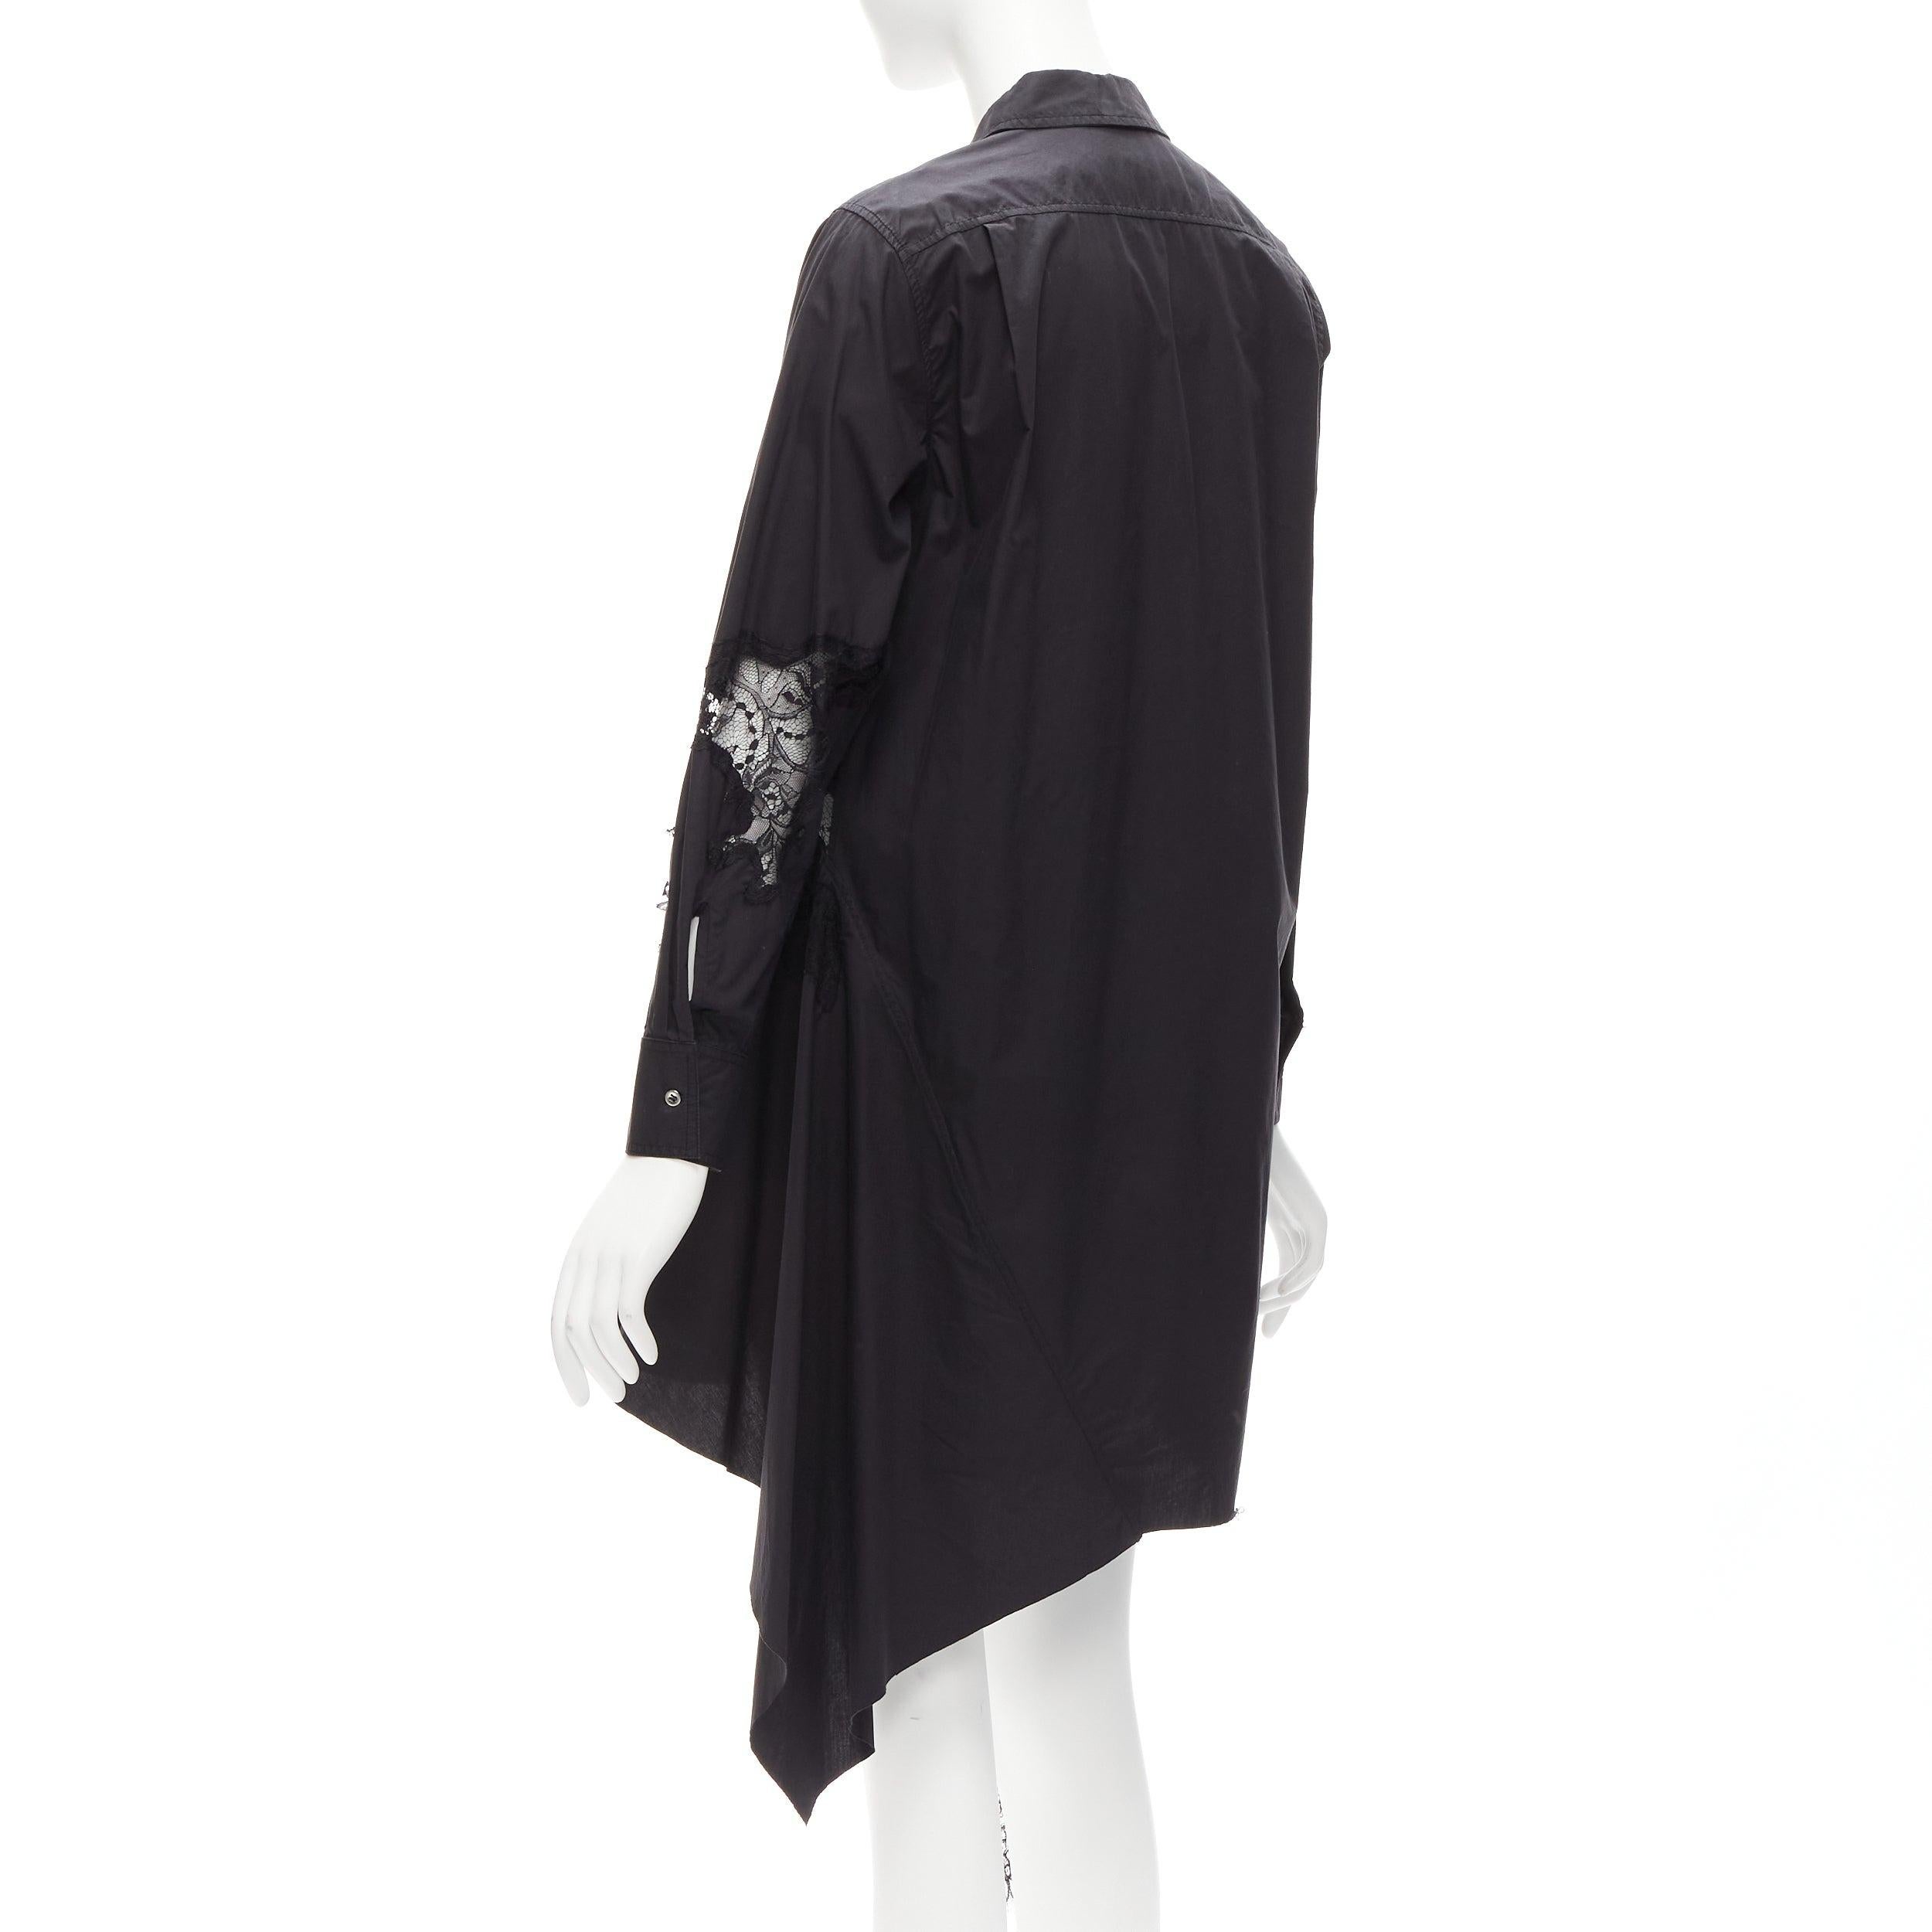 MARQUES ALMEIDA 100% cotton black lace applique cut out bias shirt dress XS For Sale 1